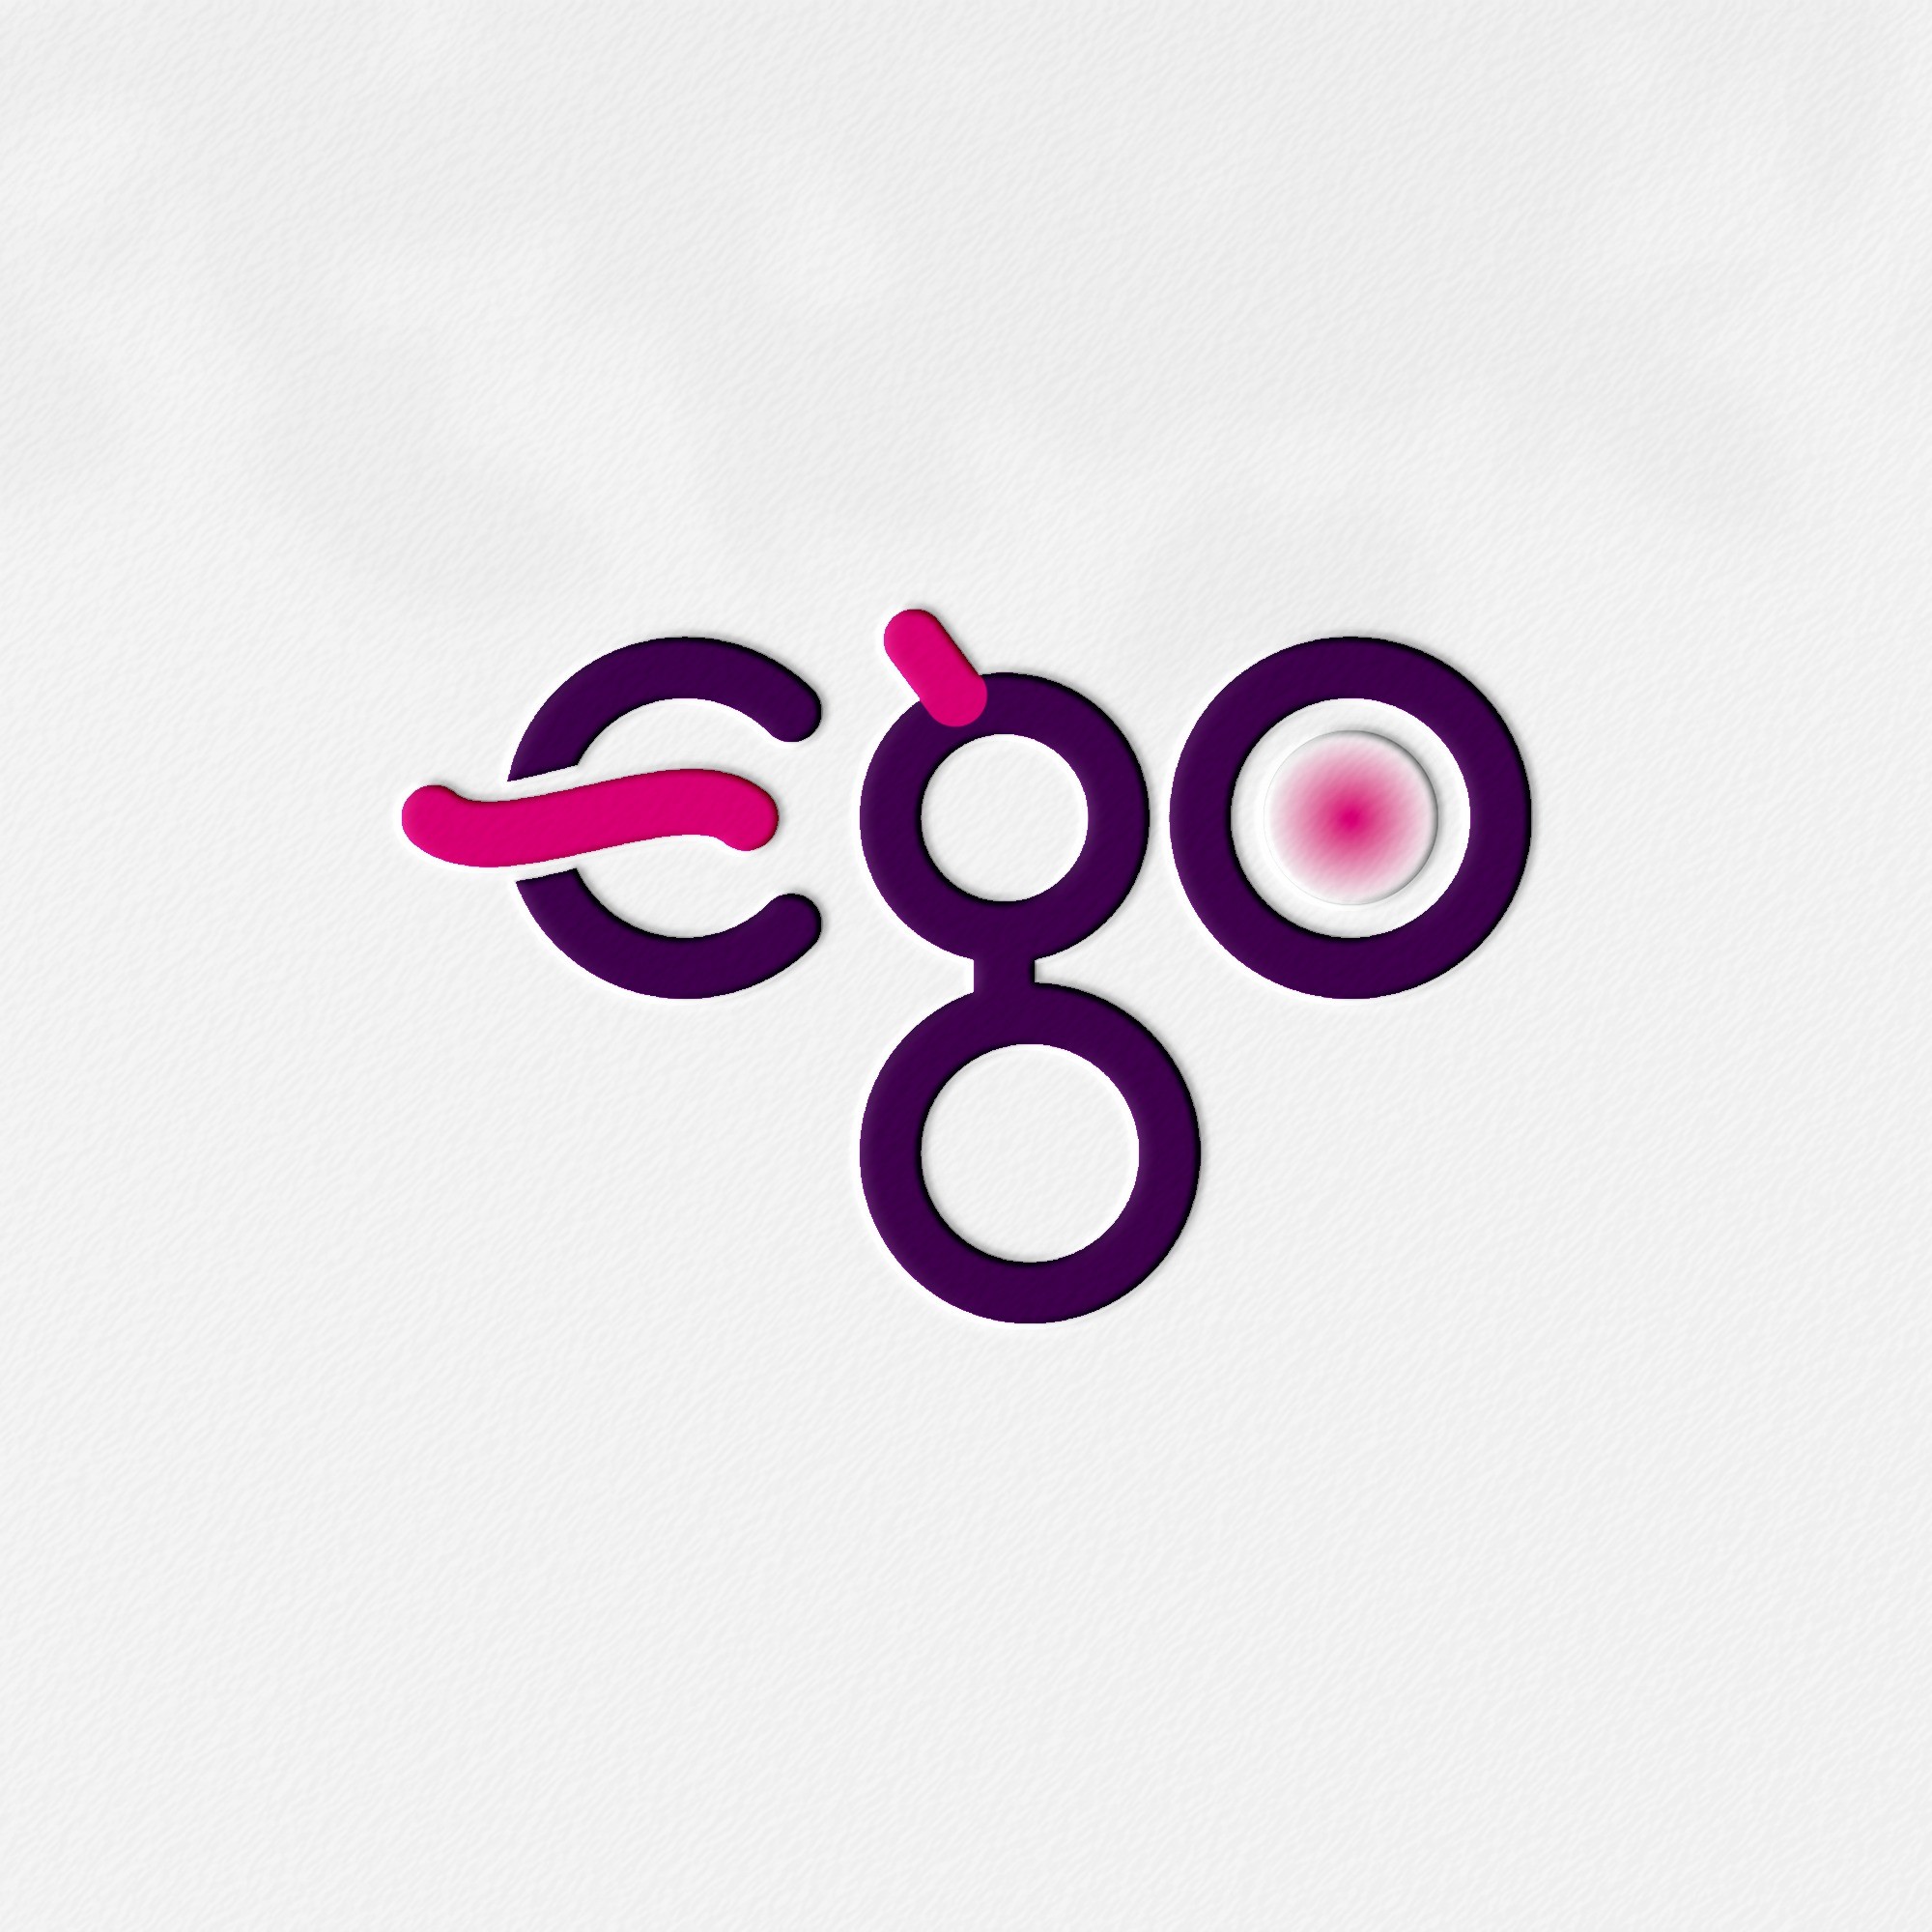 포트폴리오-성인용품서비스 이지오(EGO) 브랜딩